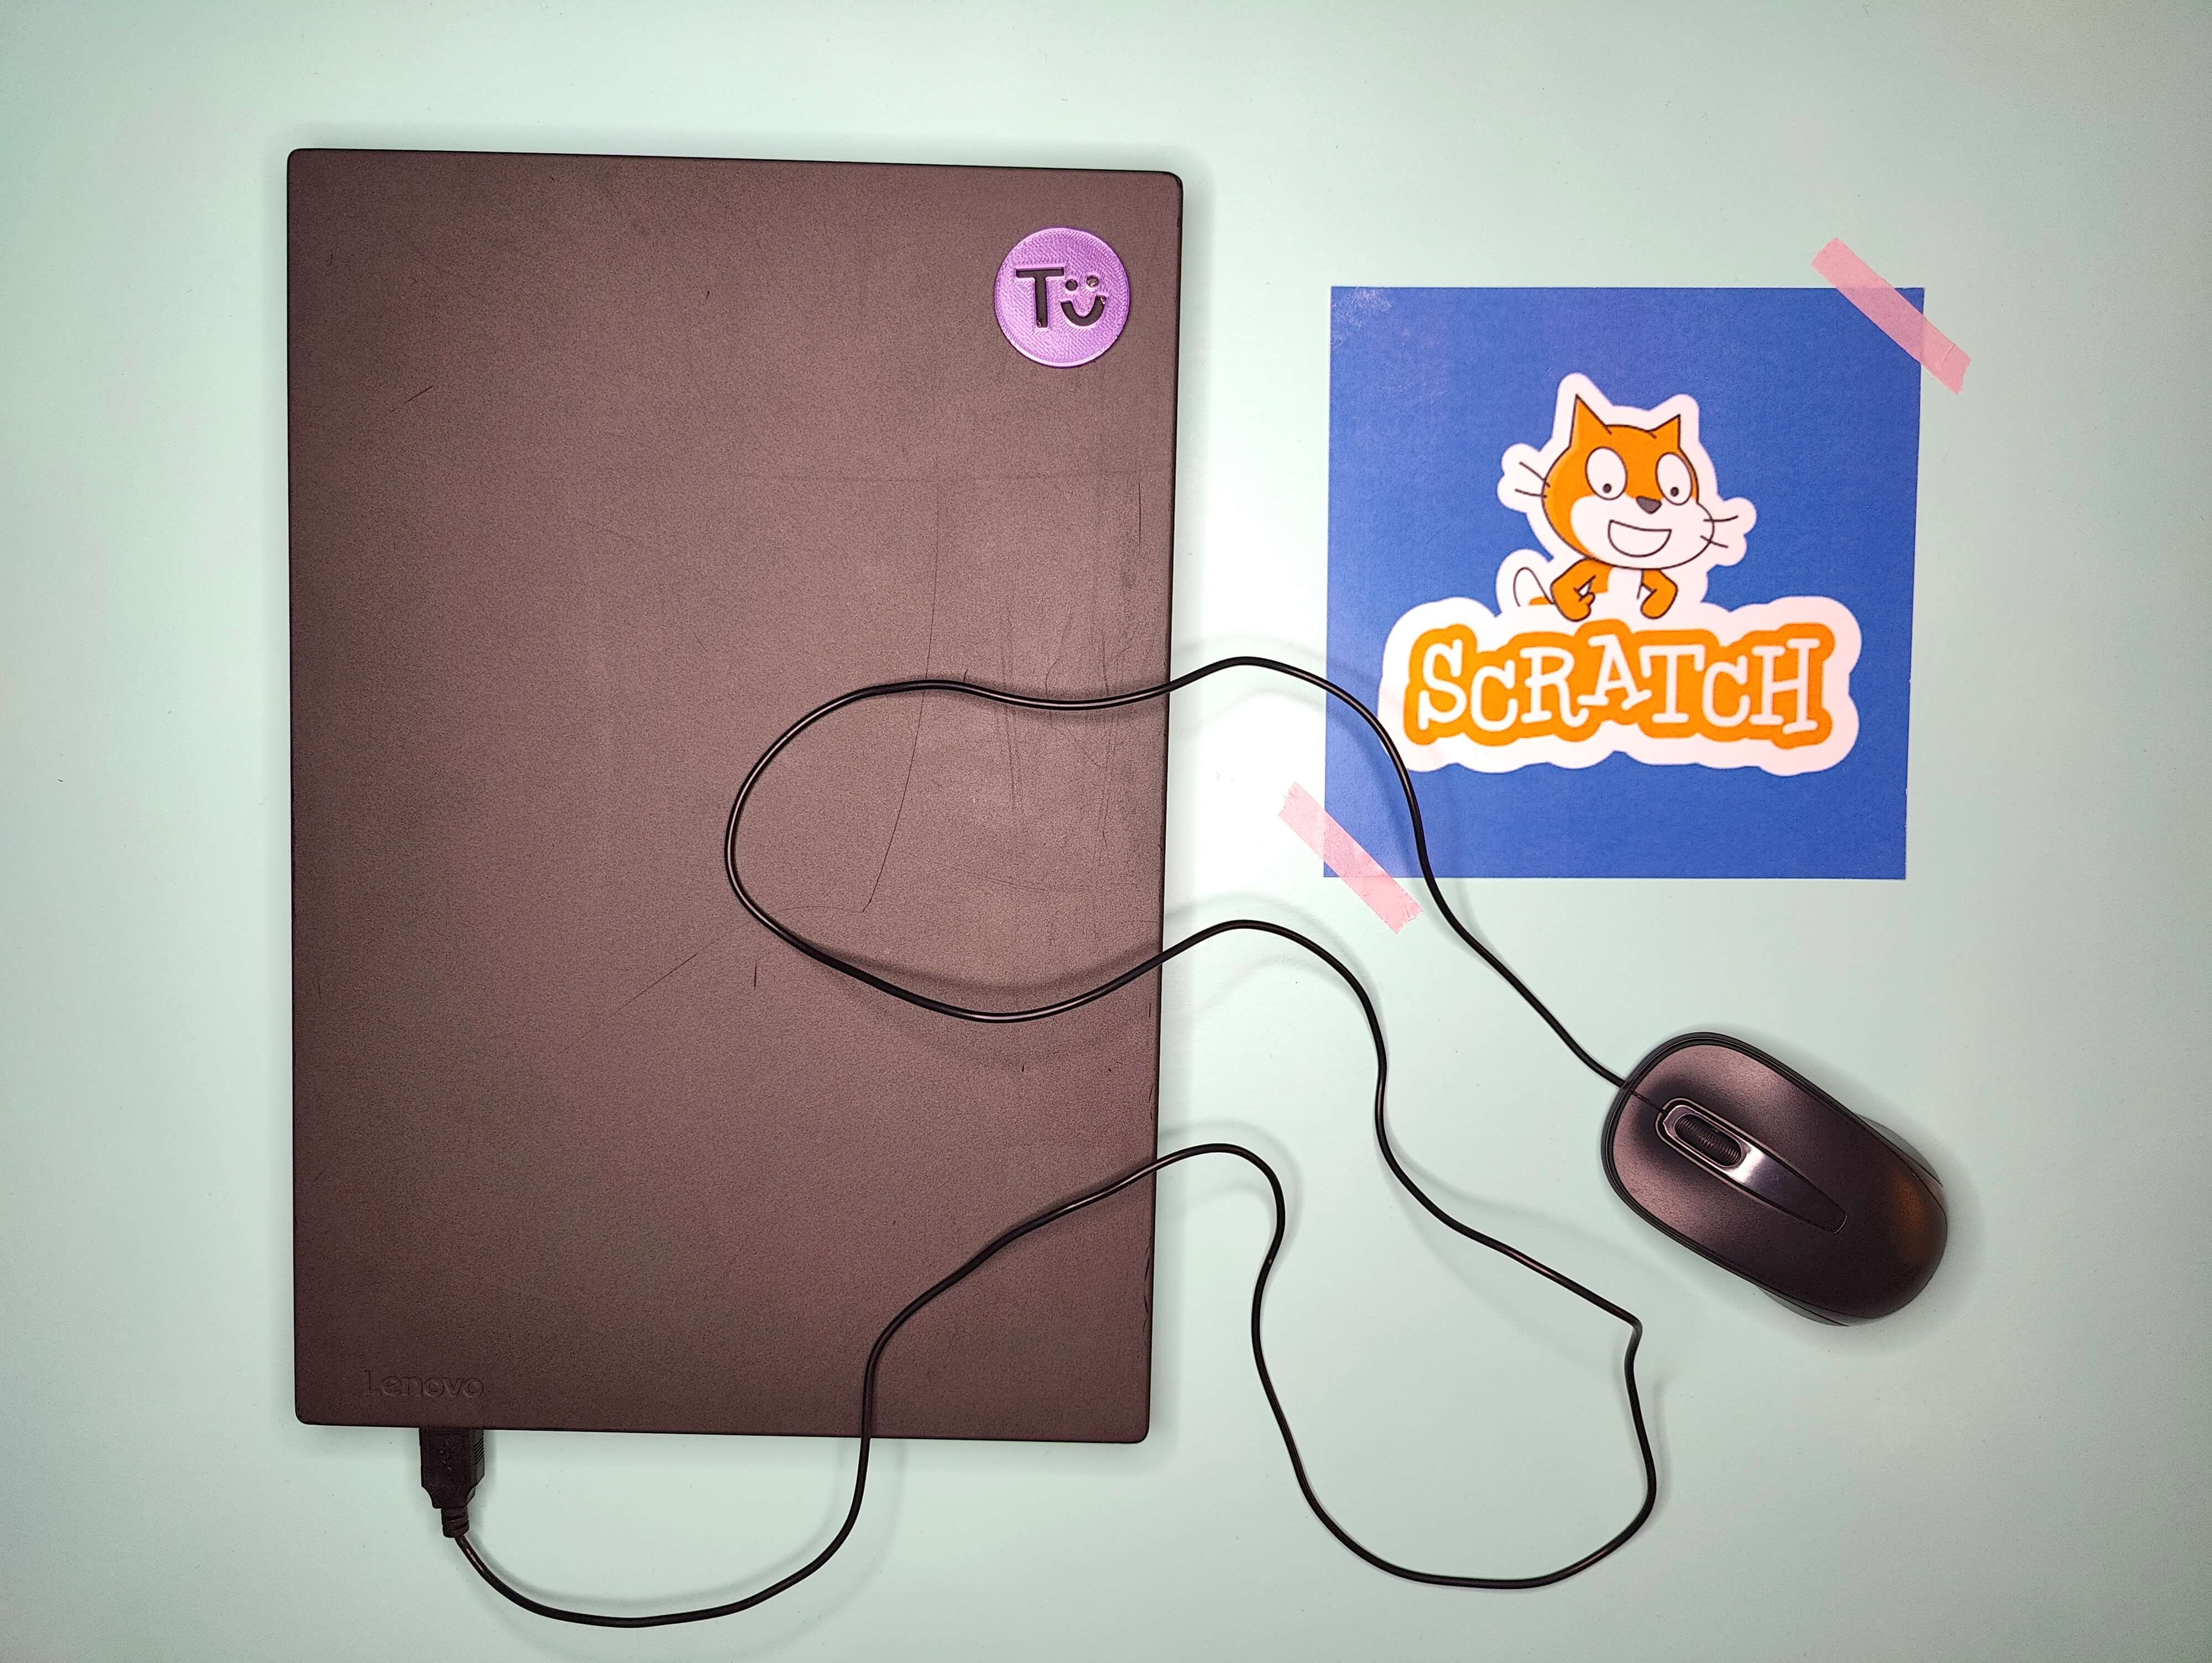 Laptop mit Maus, Bild des Scratch-Logos